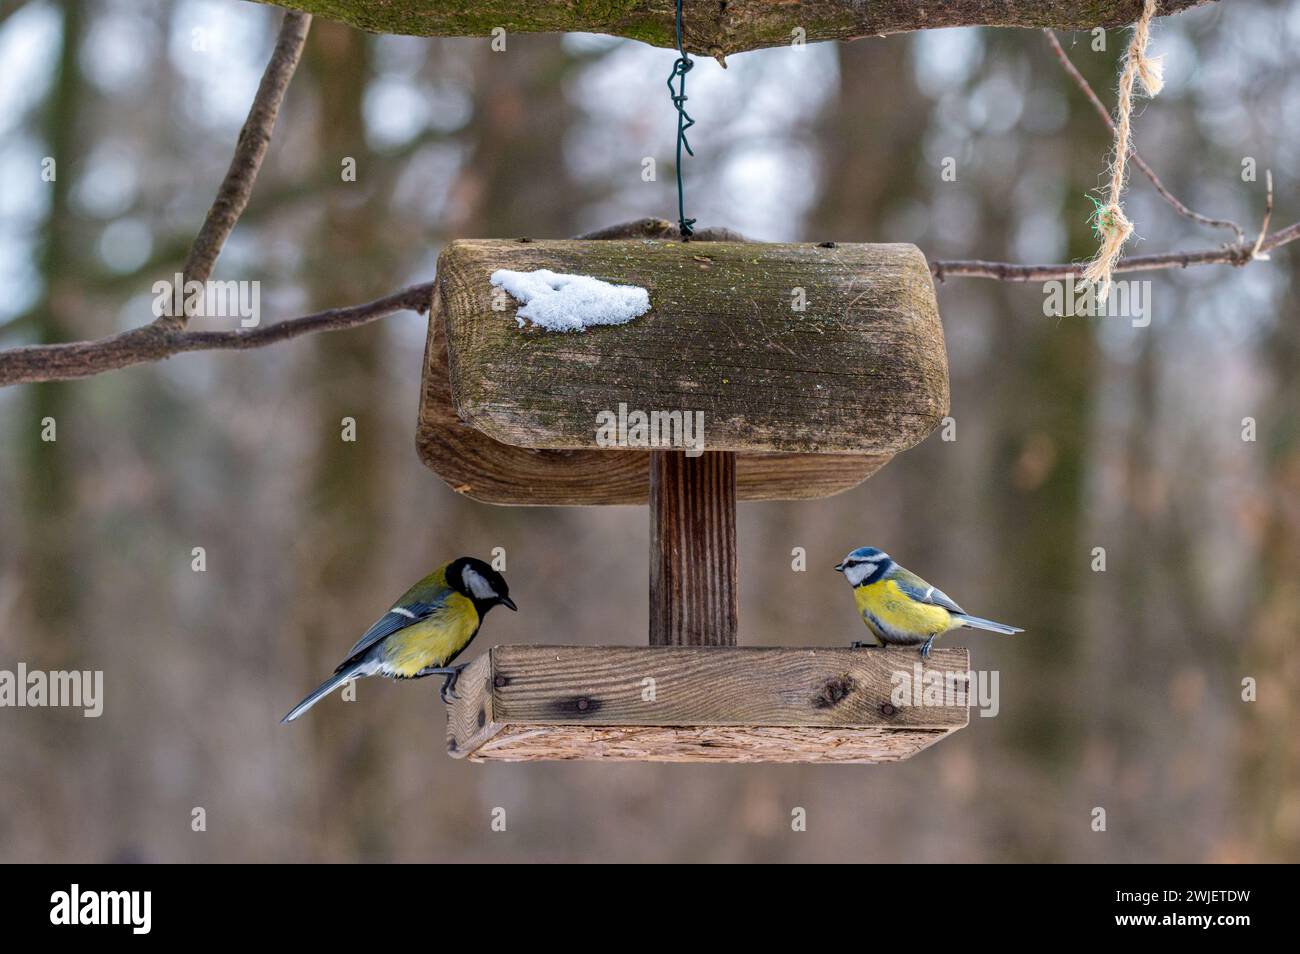 Les deux oiseaux perchés sur une mangeoire en bois. Parus major et Cyanistes caeruleus Banque D'Images